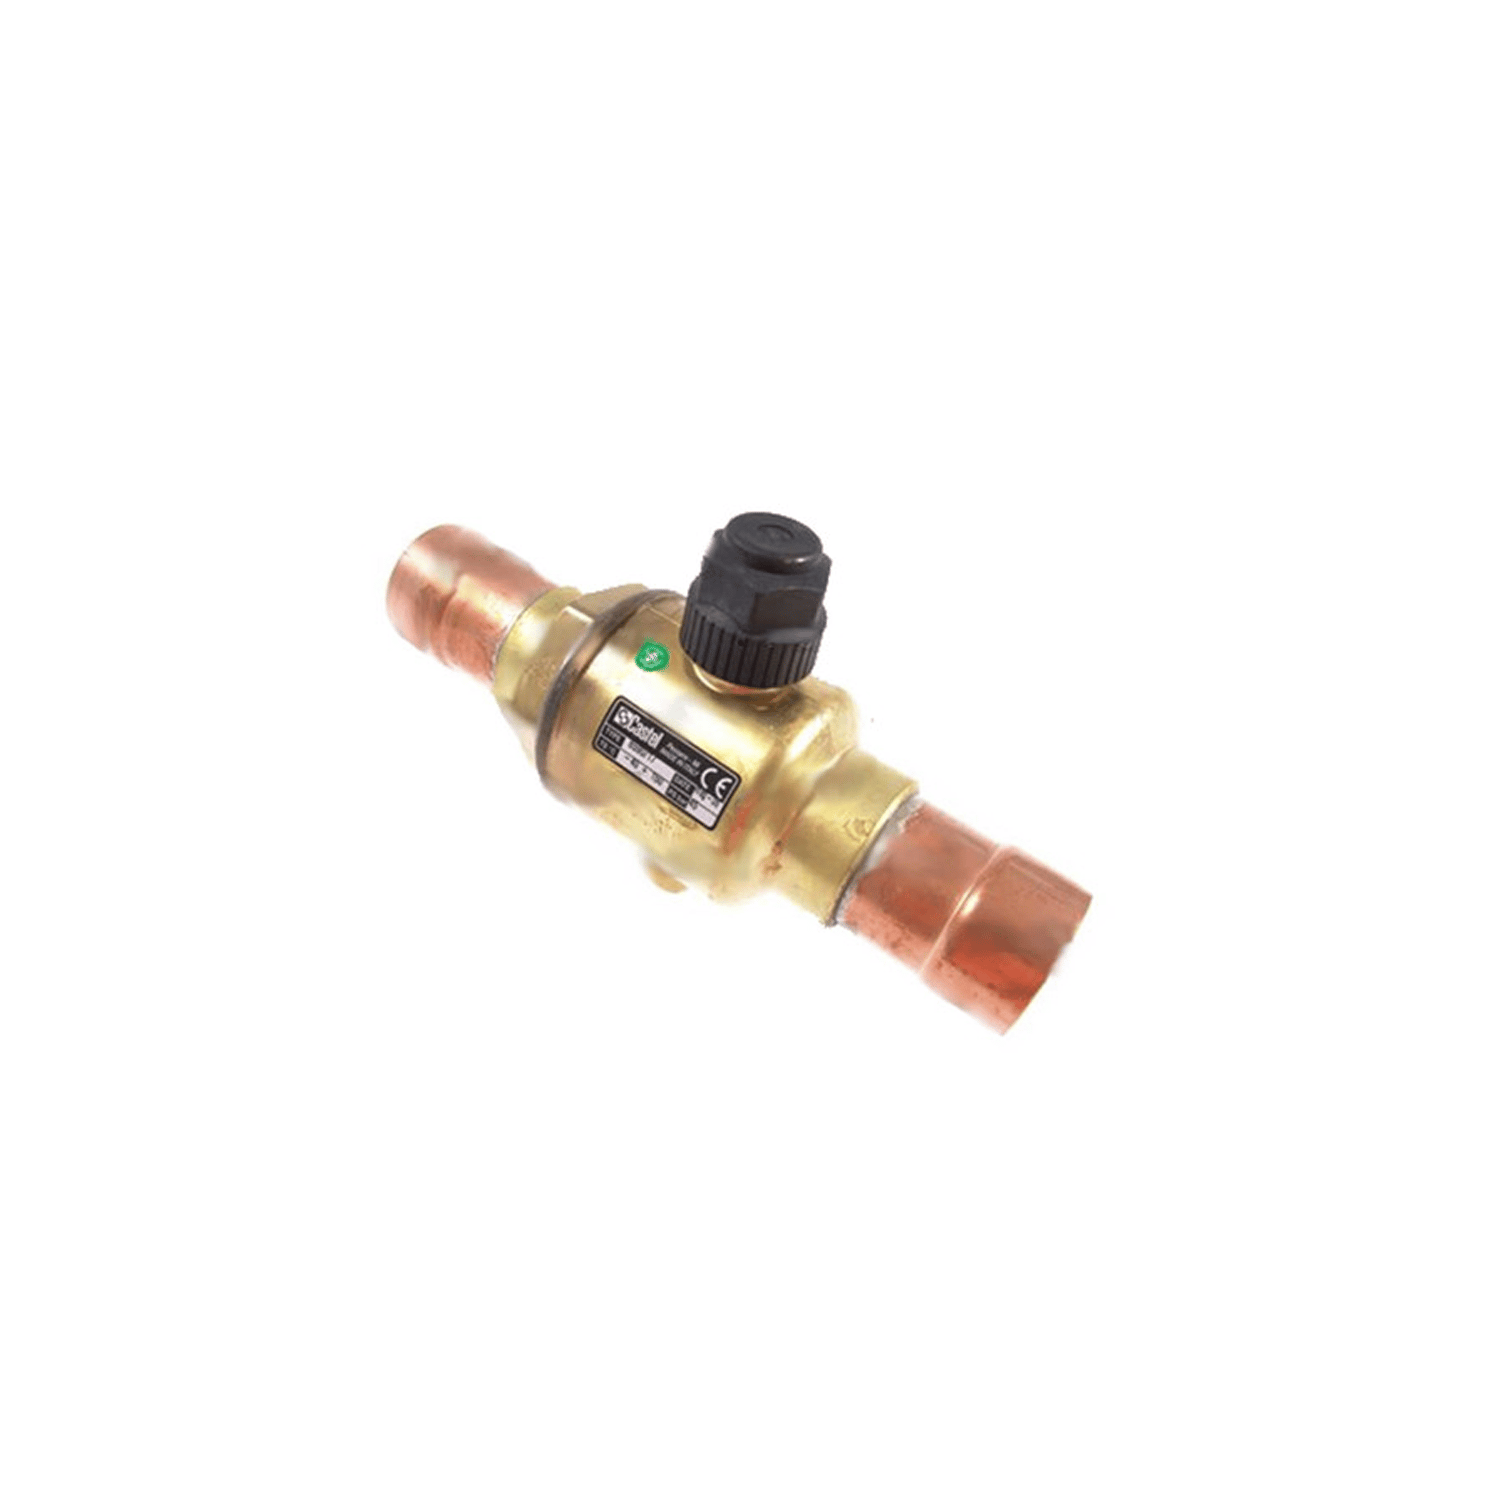 Ball valve Castel 6590 / 21A, solder 2.5 / 8 "(67 mm)